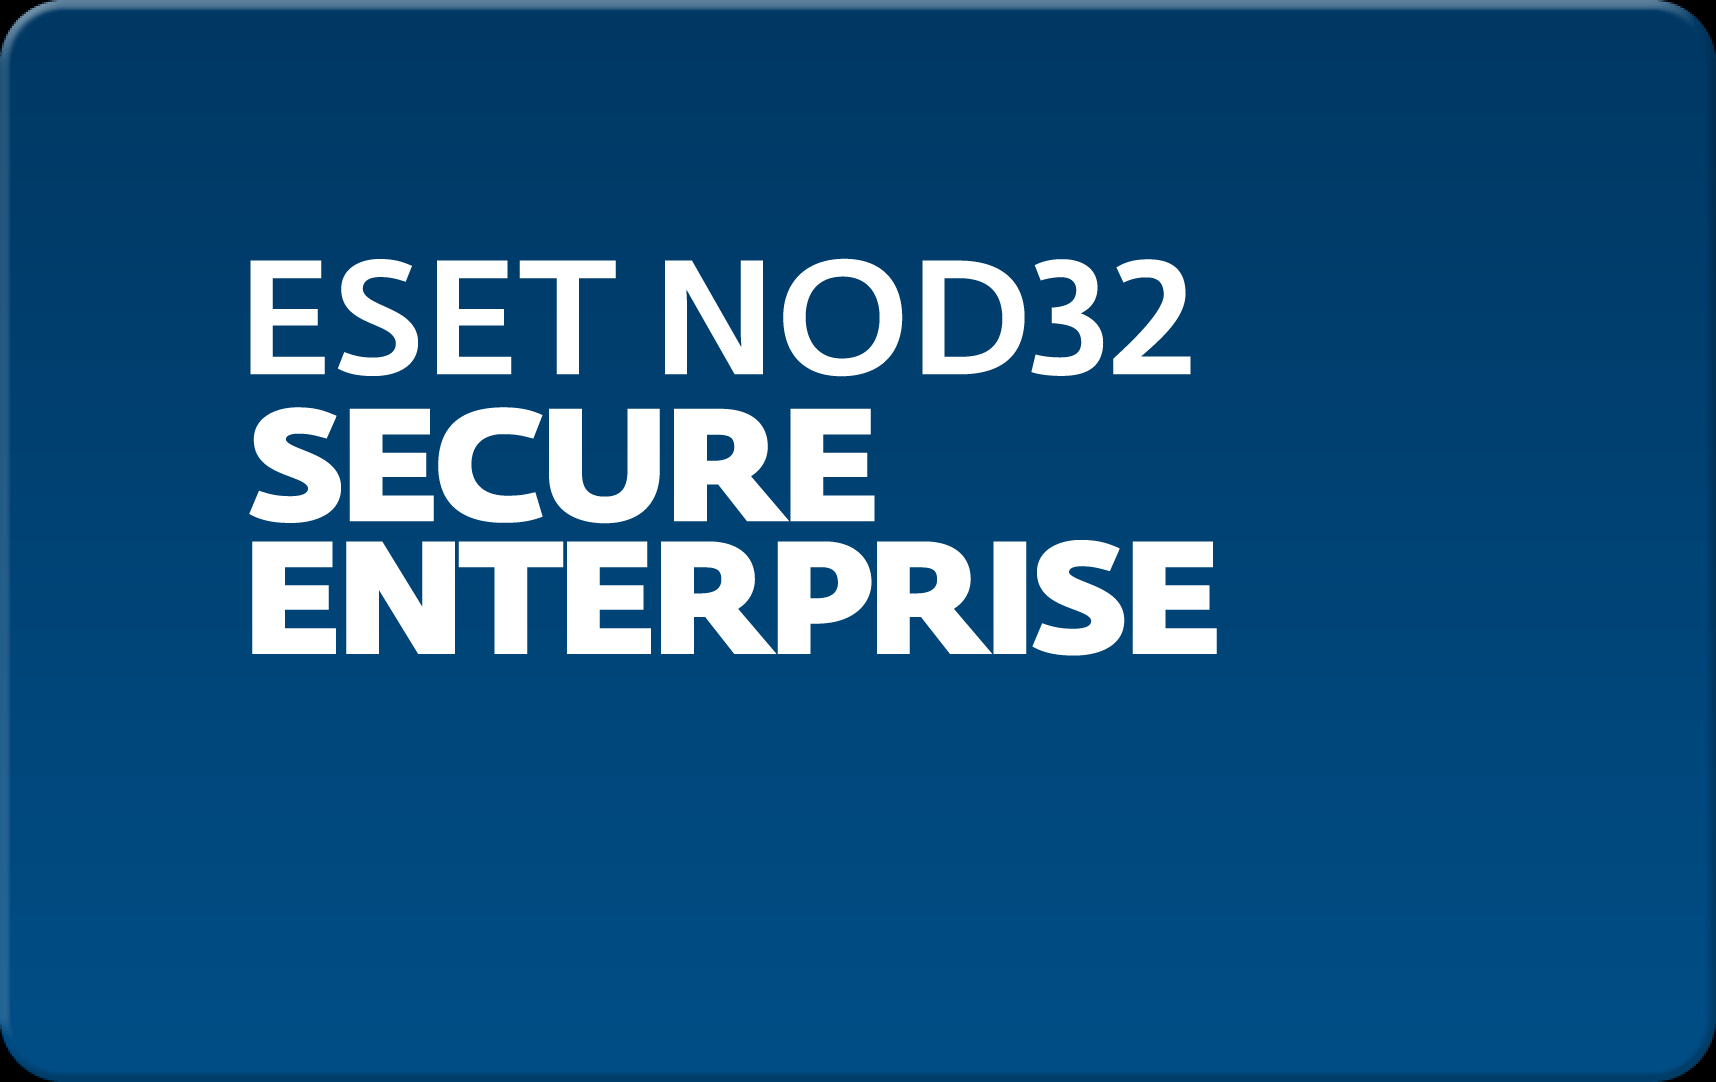        Eset NOD32 Secure Enterprise  174  NOD32-ESE-NS-1-174  #1